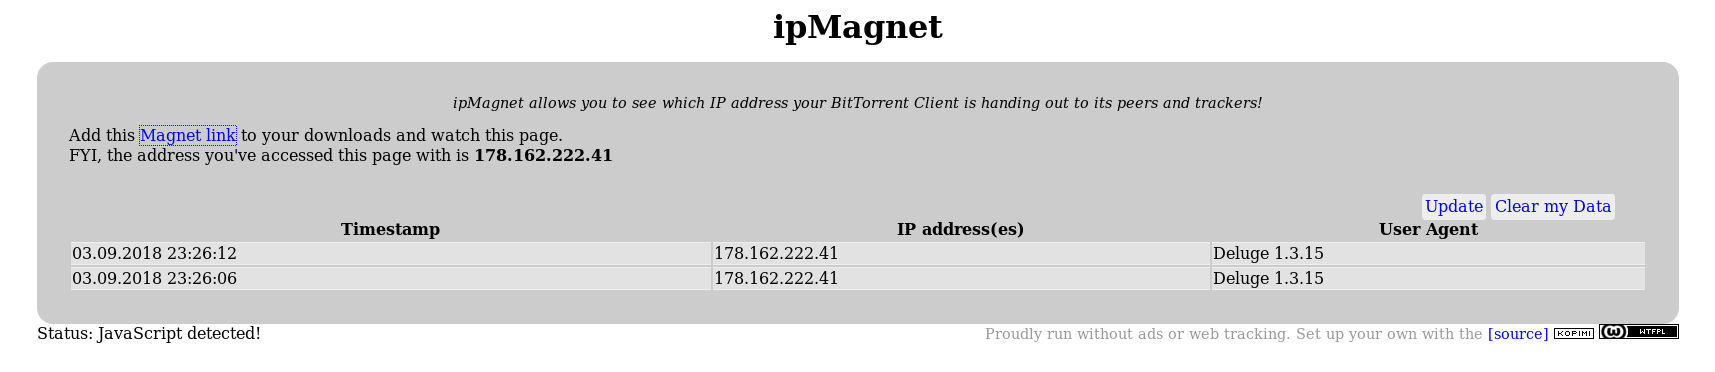 Resultados de ipMagnet